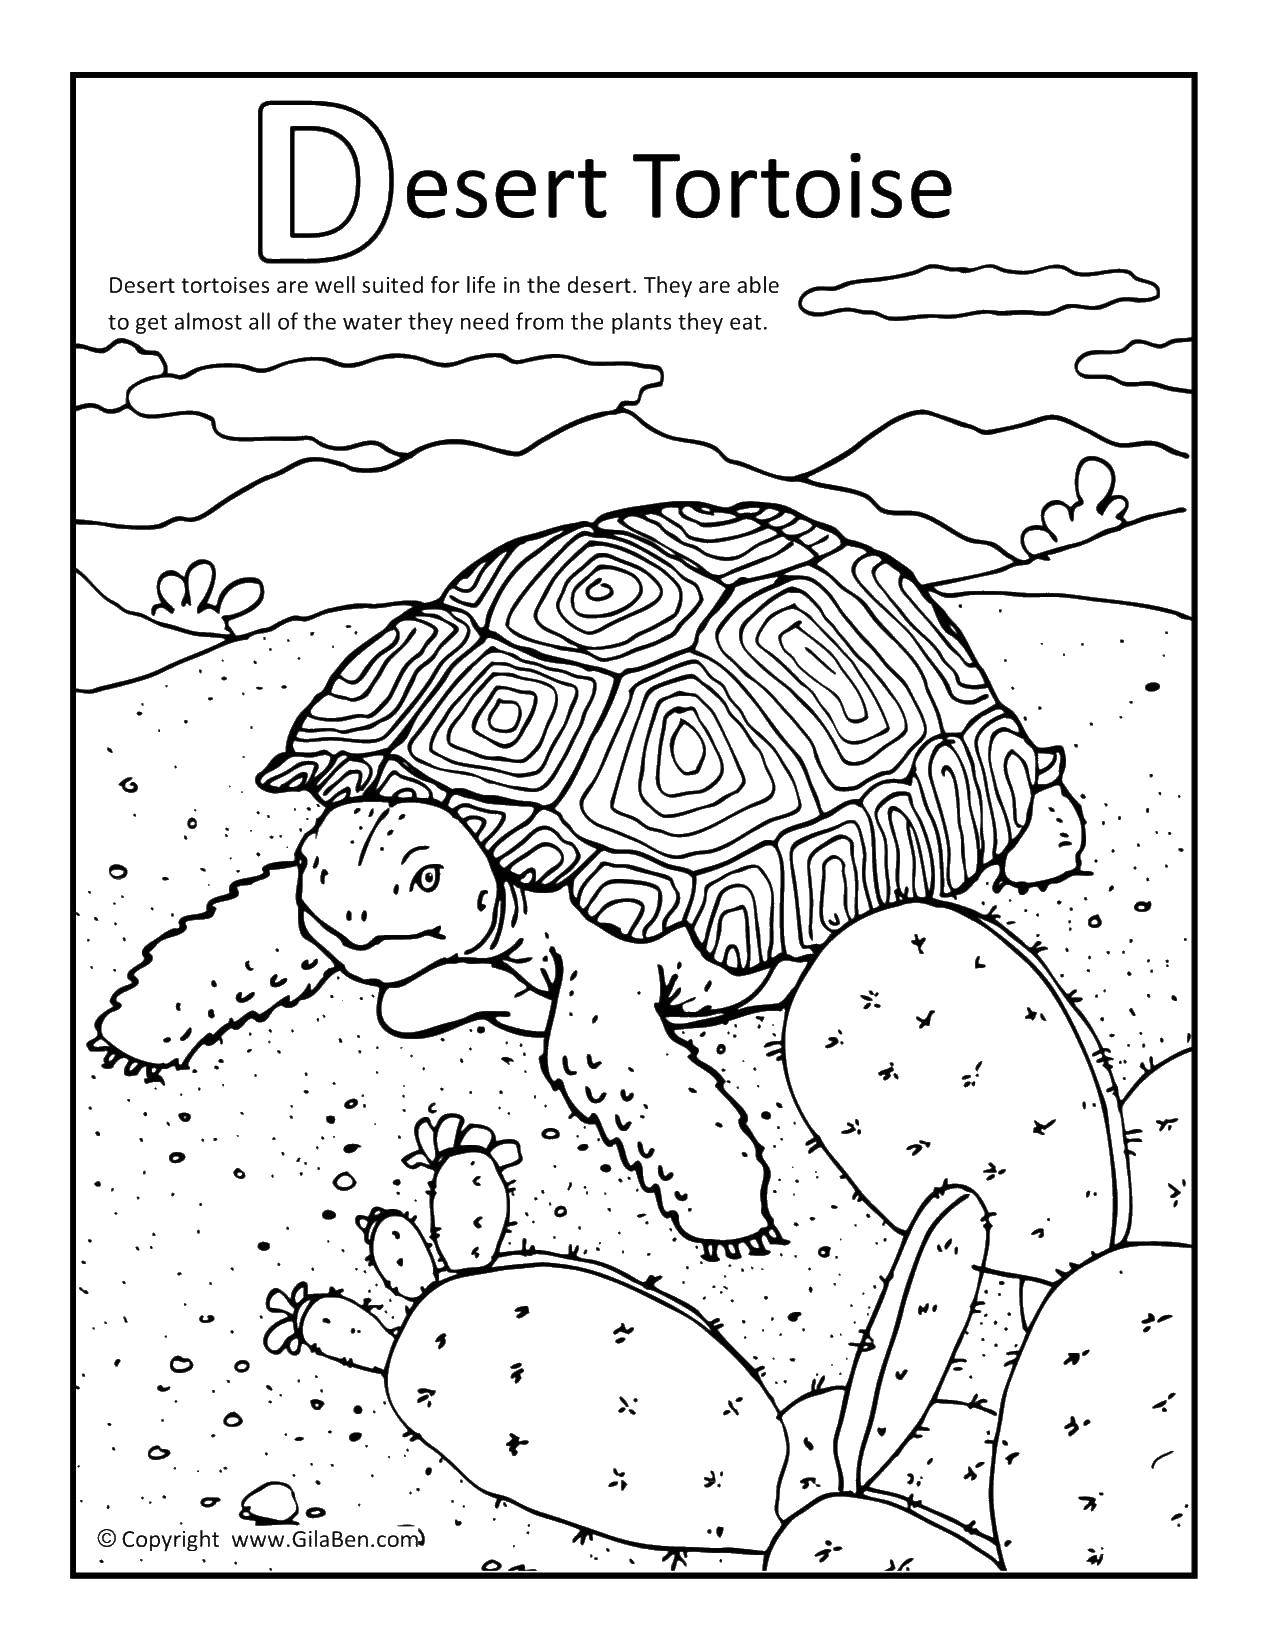 Название: Раскраска Пустынная черепаха. Категория: Пустыня. Теги: черепаха, пустыня, кактус.